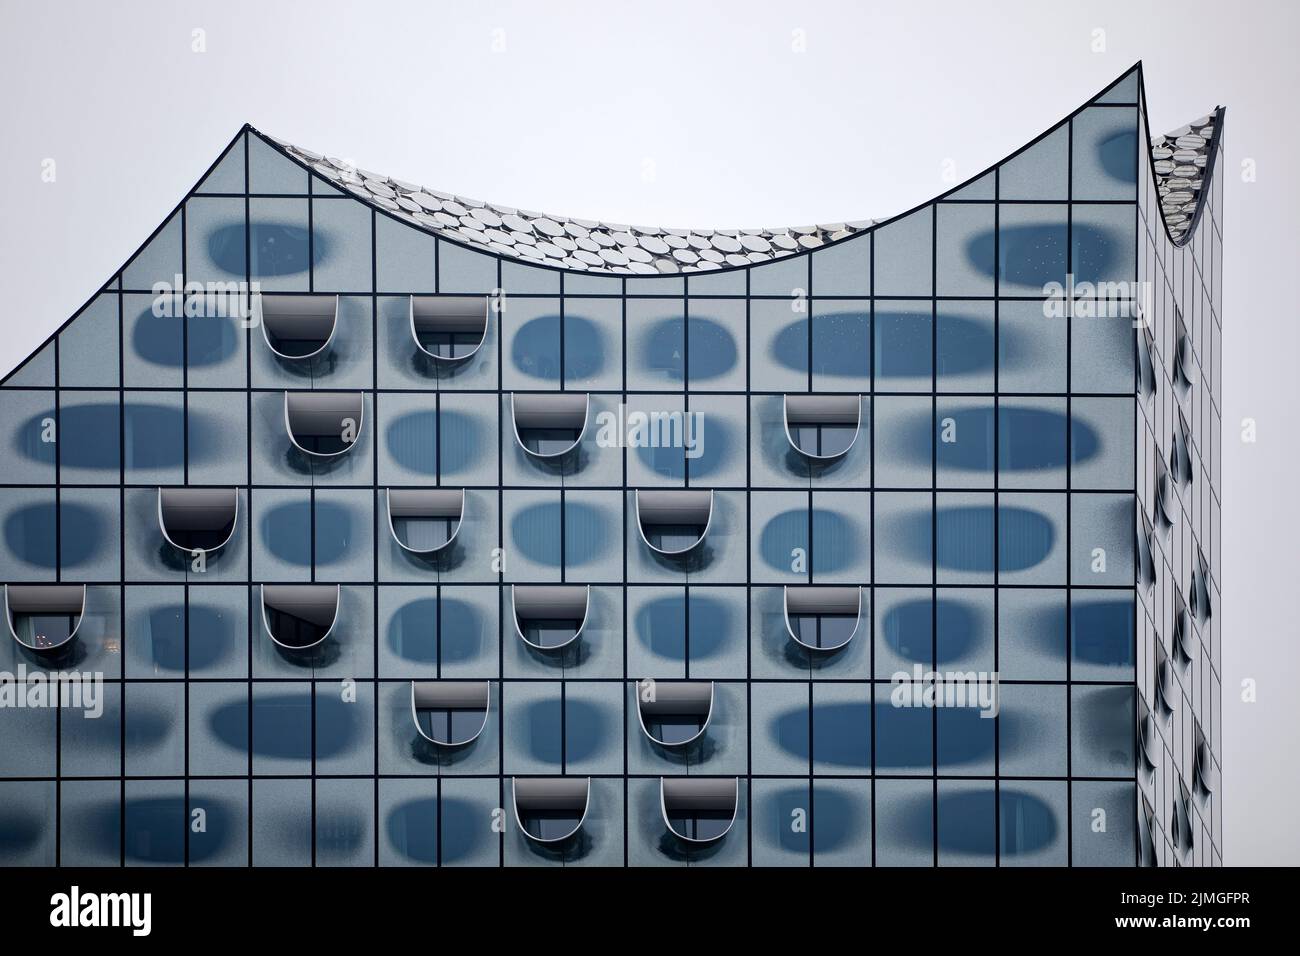 Glasfassade der Elbphilharmonie, Hafencity, Hamburg, Deutschland, Europa Stock Photo